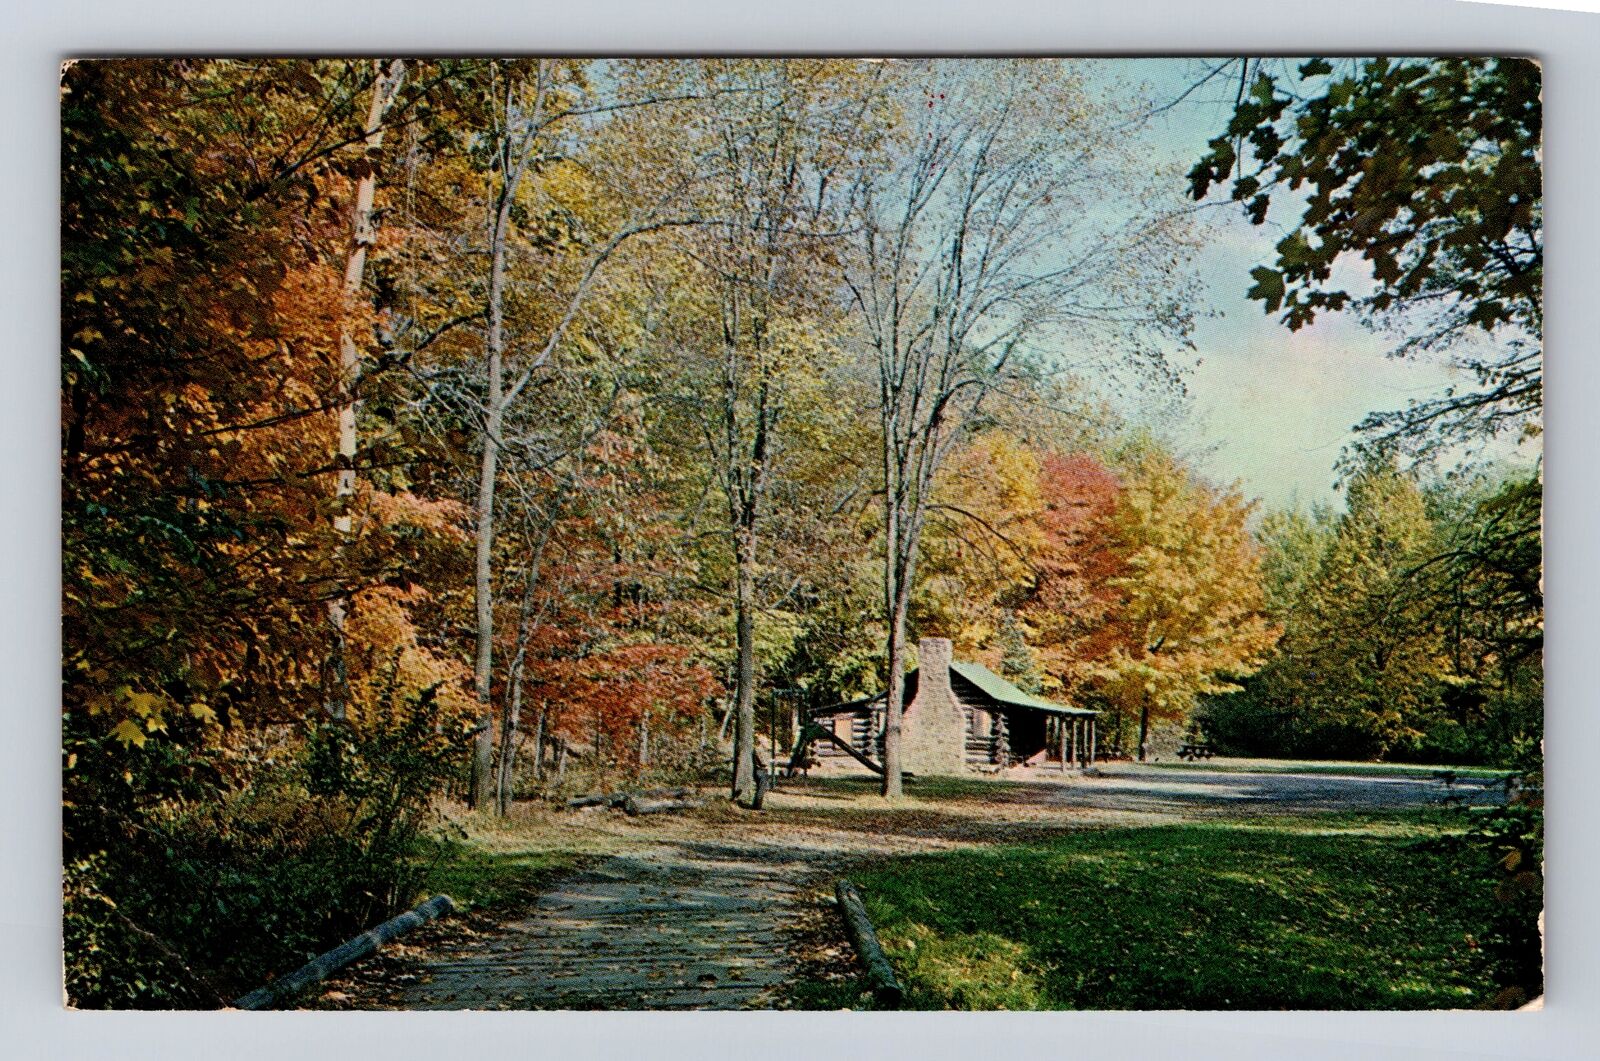 Alliance OH-Ohio, Scout Cabin, Silver Lake Park, Vintage Souvenir Postcard